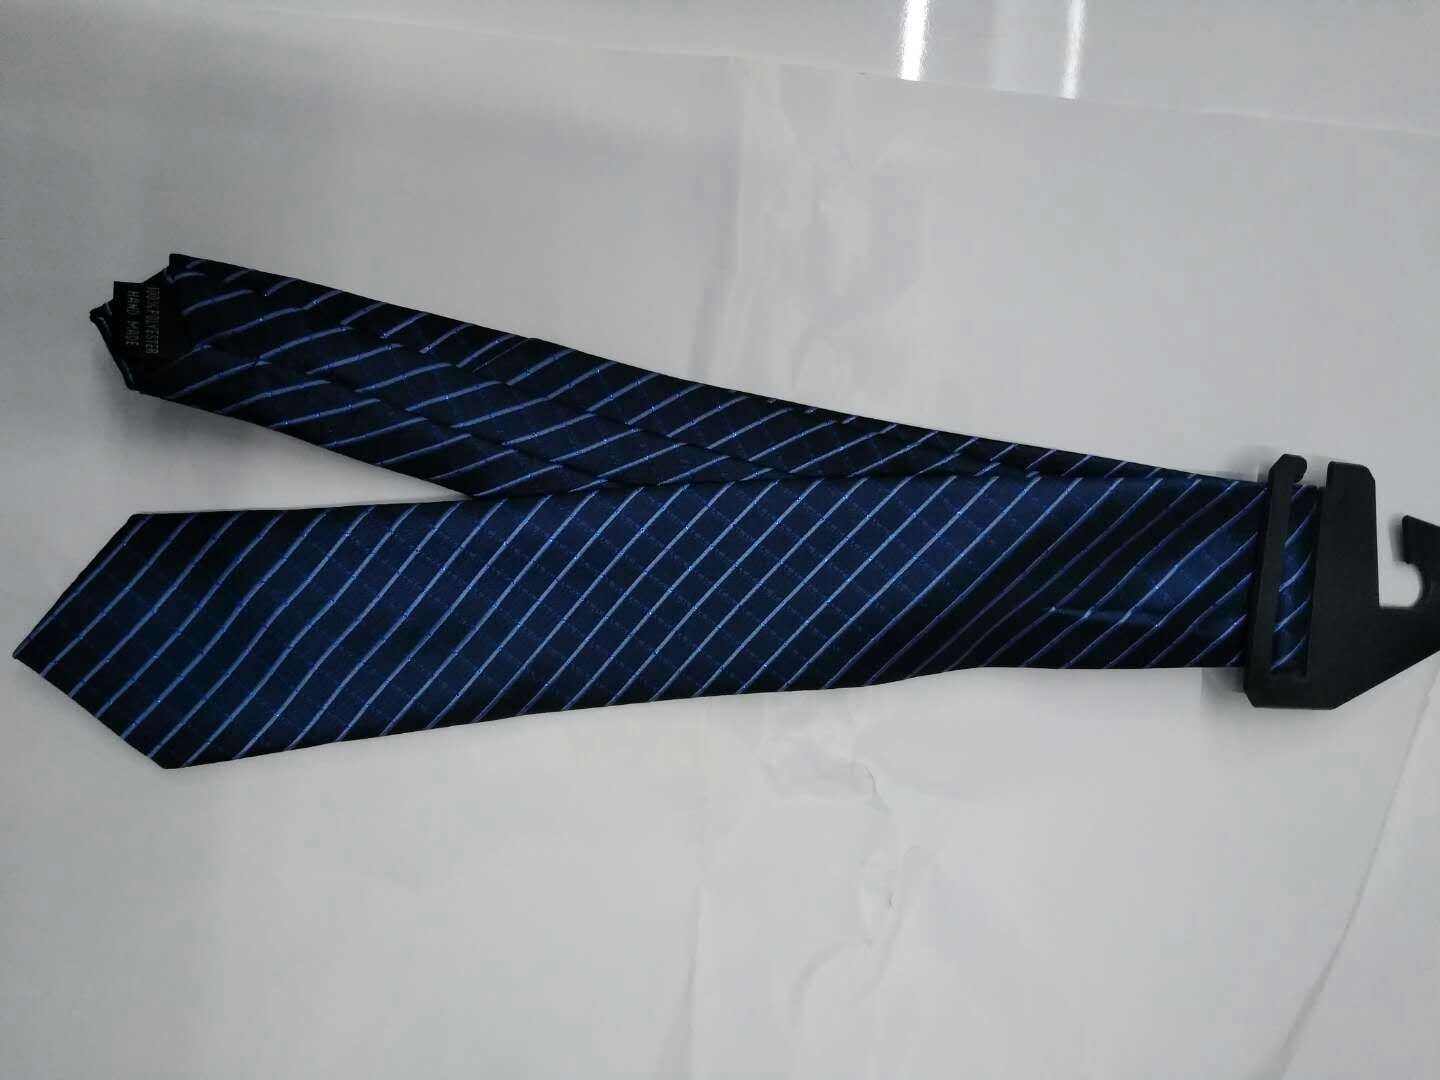 新款现货休闲领带定制厂家直销领带厂家休闲男士正装领带图